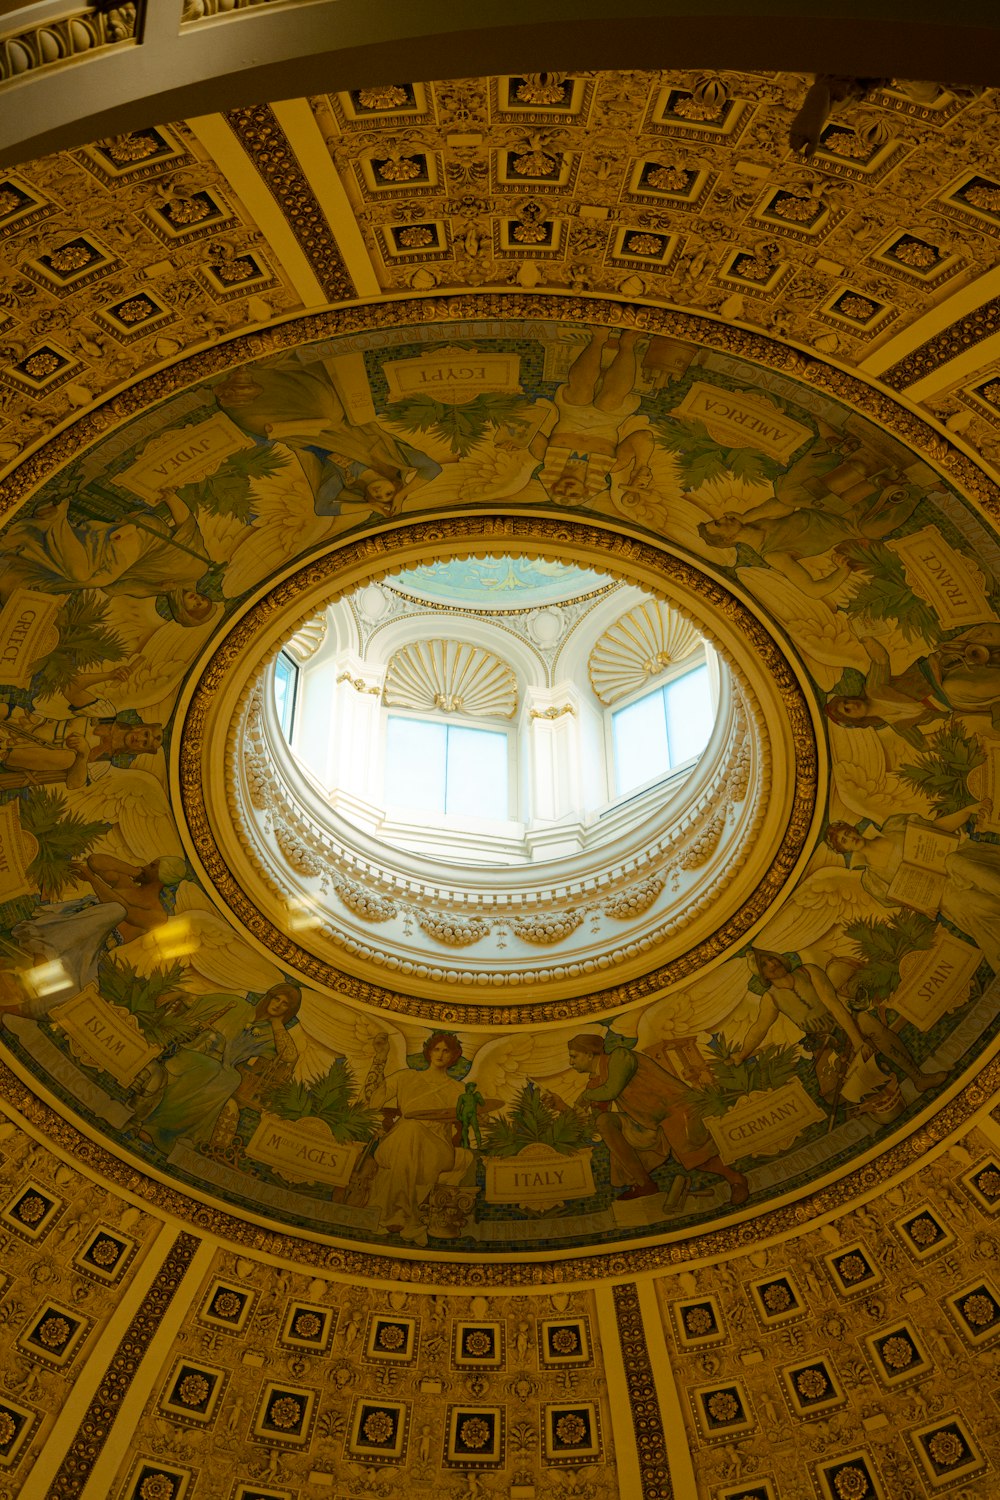 絵画が描かれたドーム型の天井